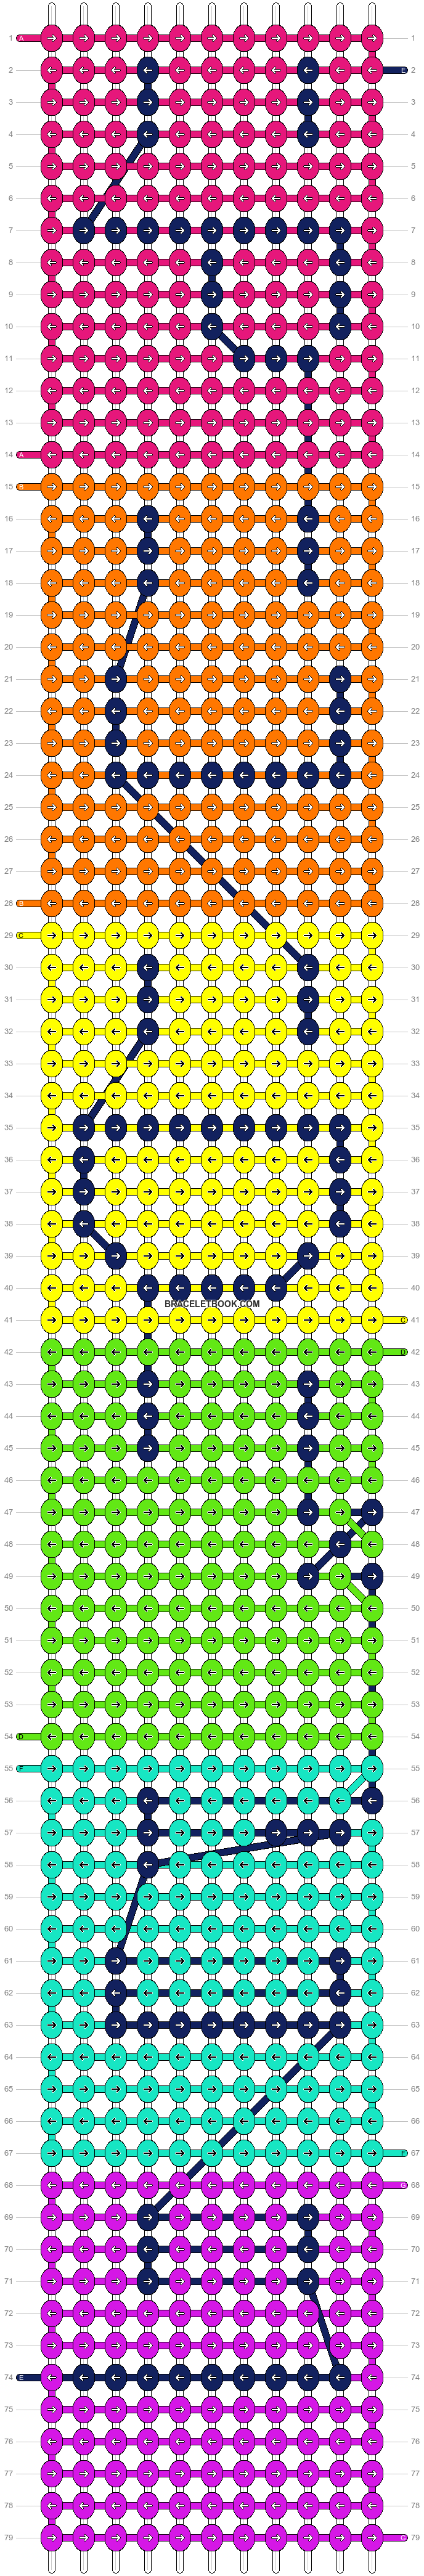 Alpha pattern #9541 | BraceletBook